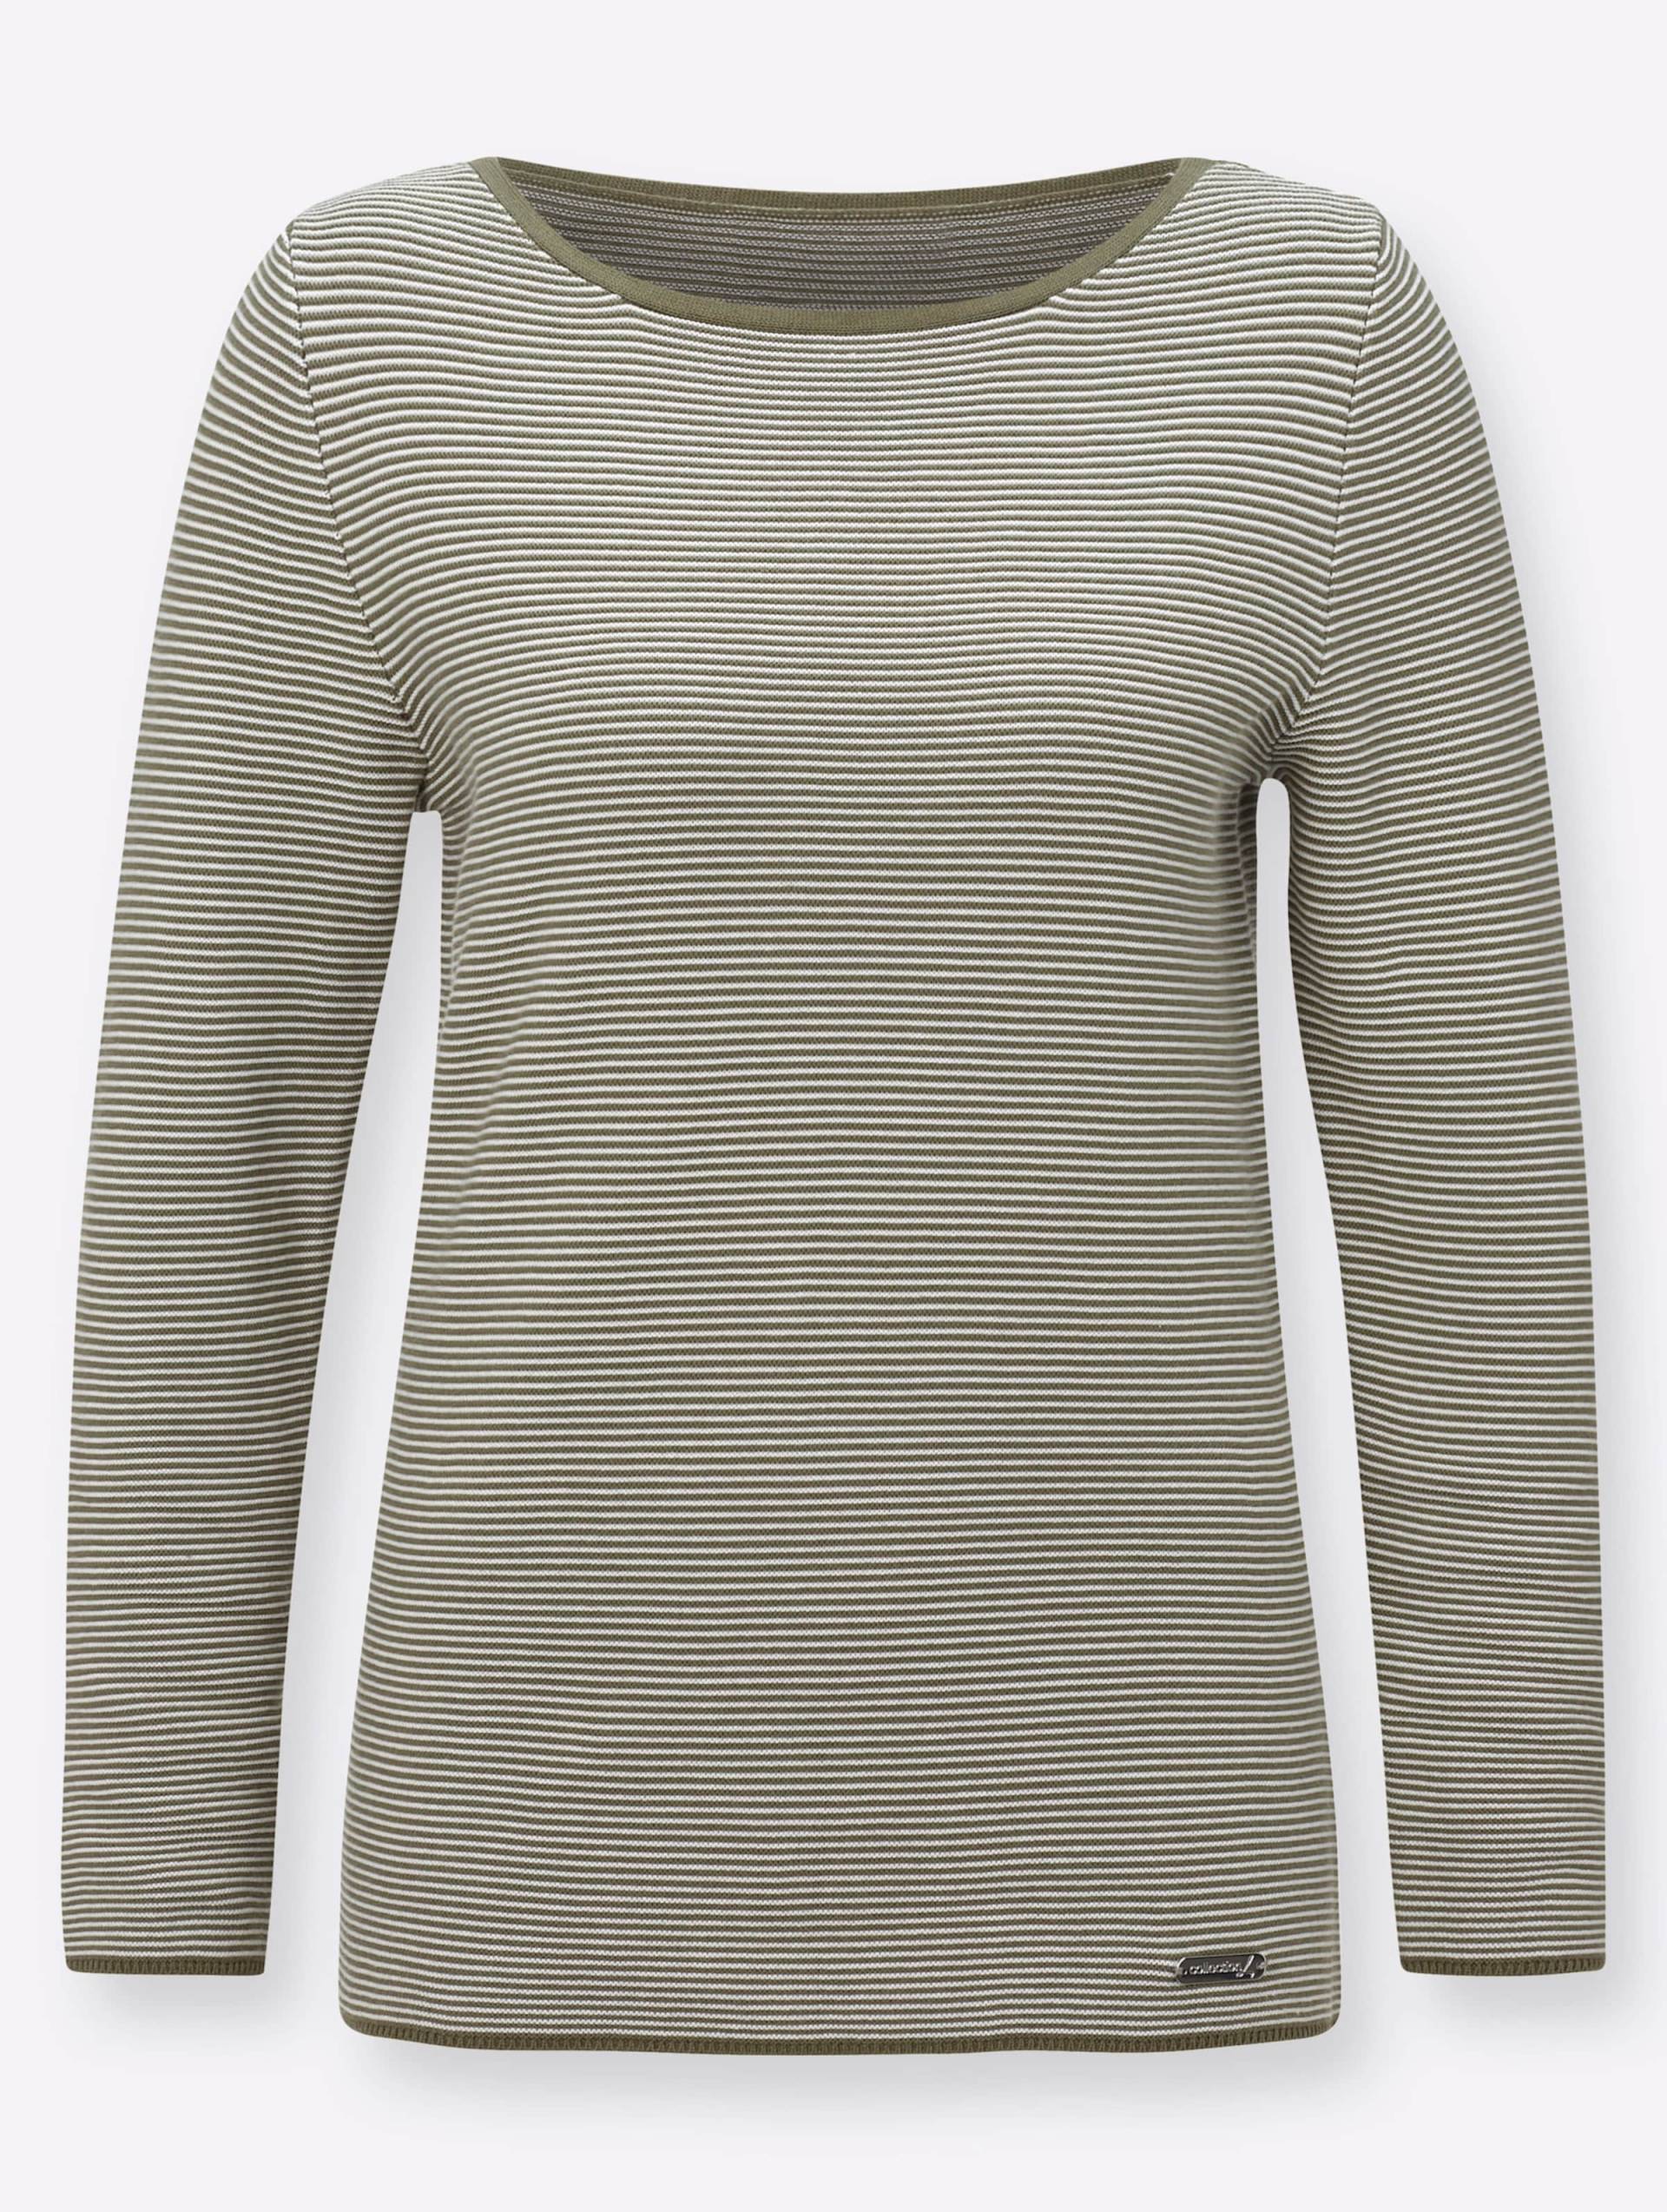 Langarm-Pullover in khaki-gestreift von heine